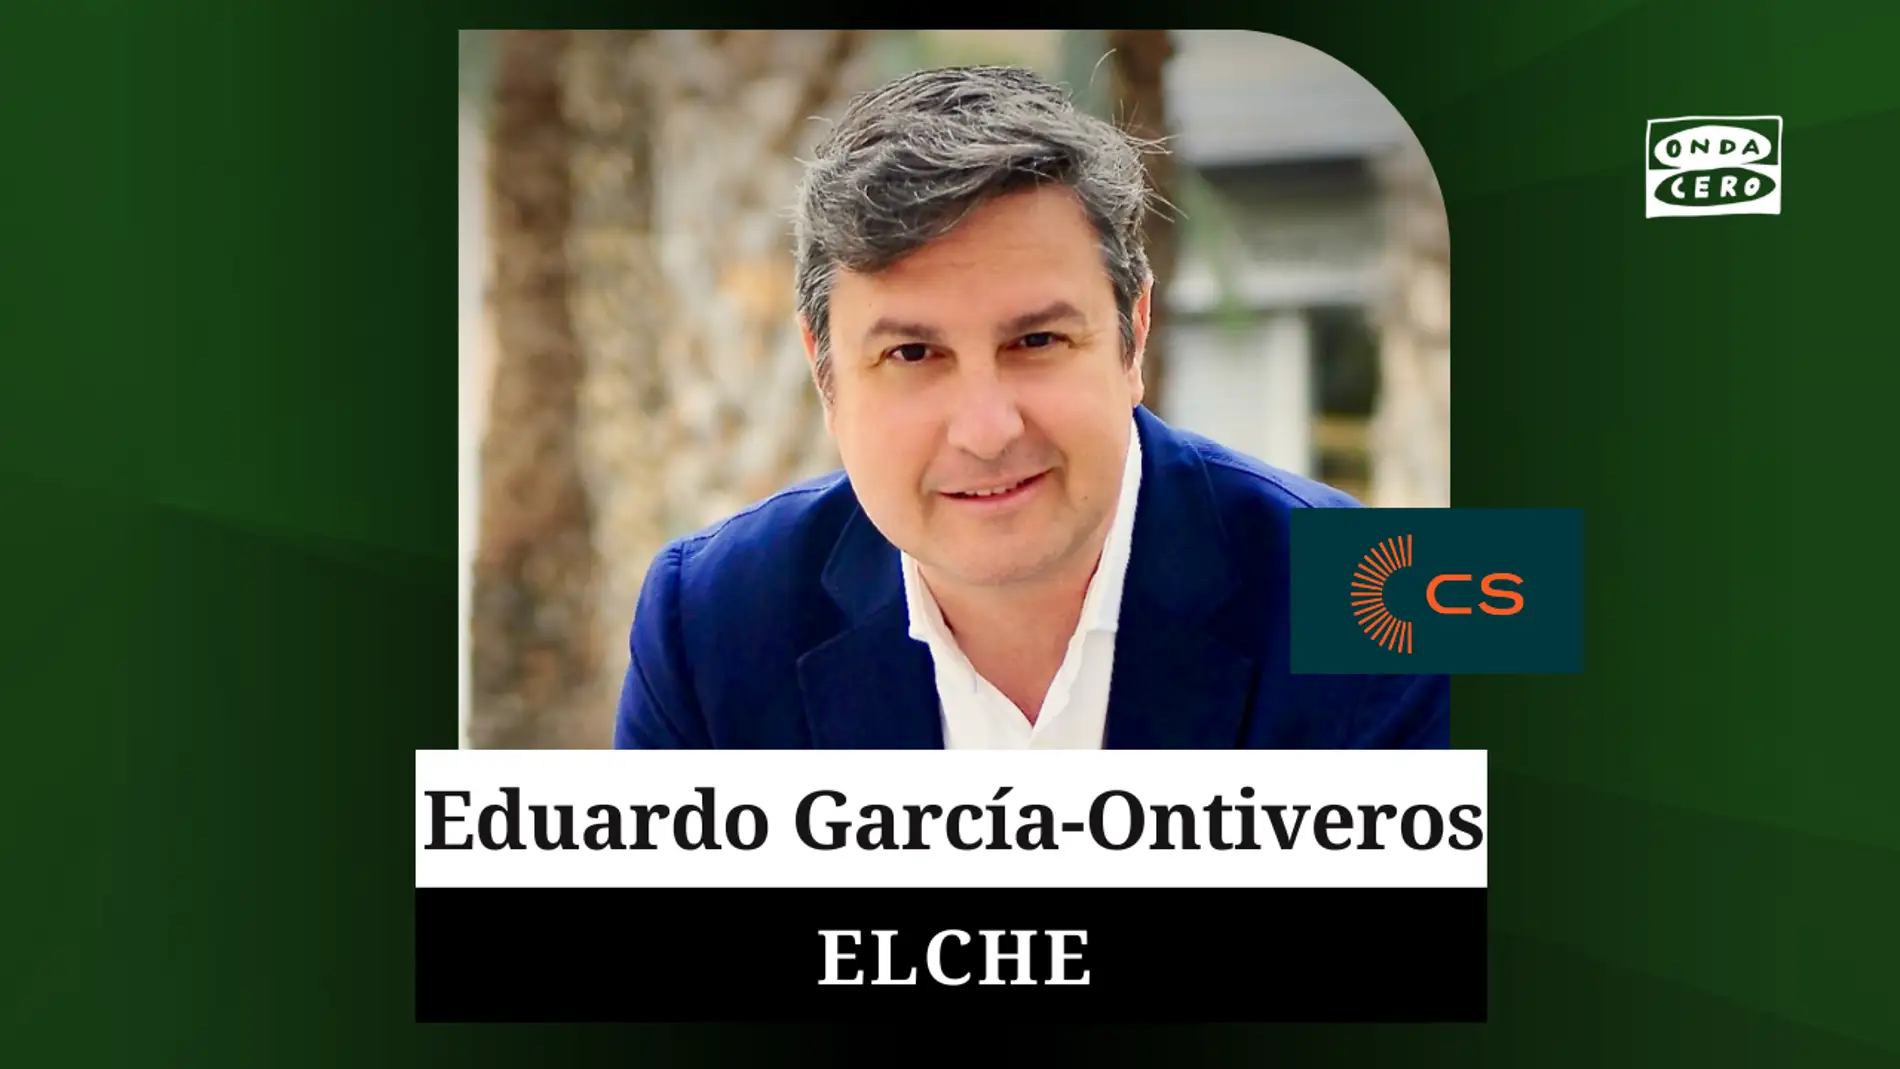 Eduardo García-Ontiveros, candidato de Ciudadanos a la Alcaldía de Elche.